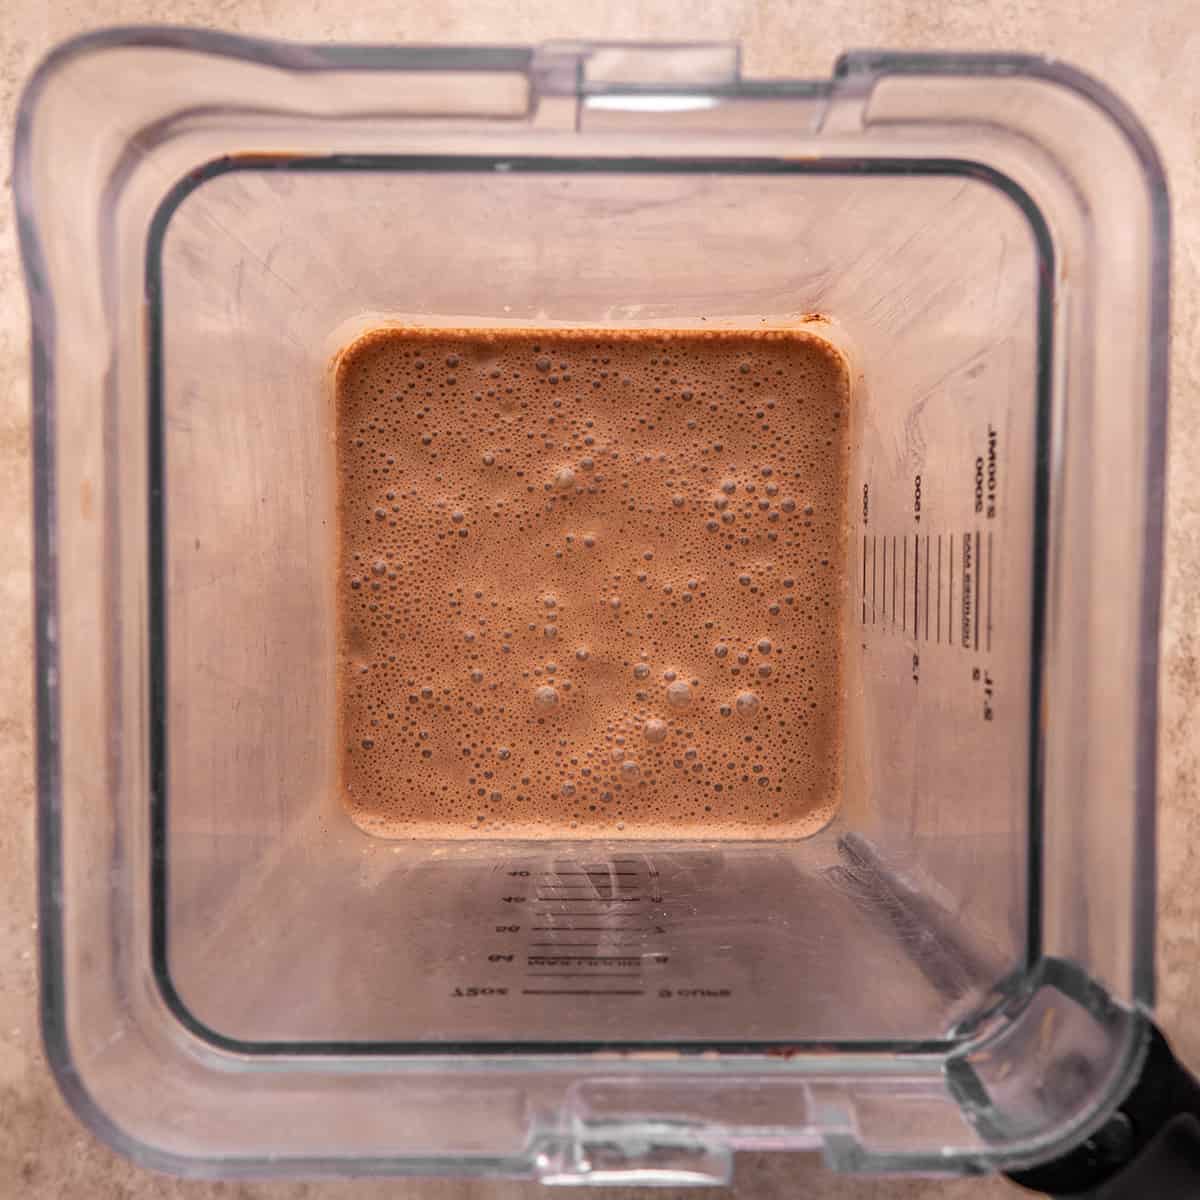 Chocolate crepe batter in a blender after blending